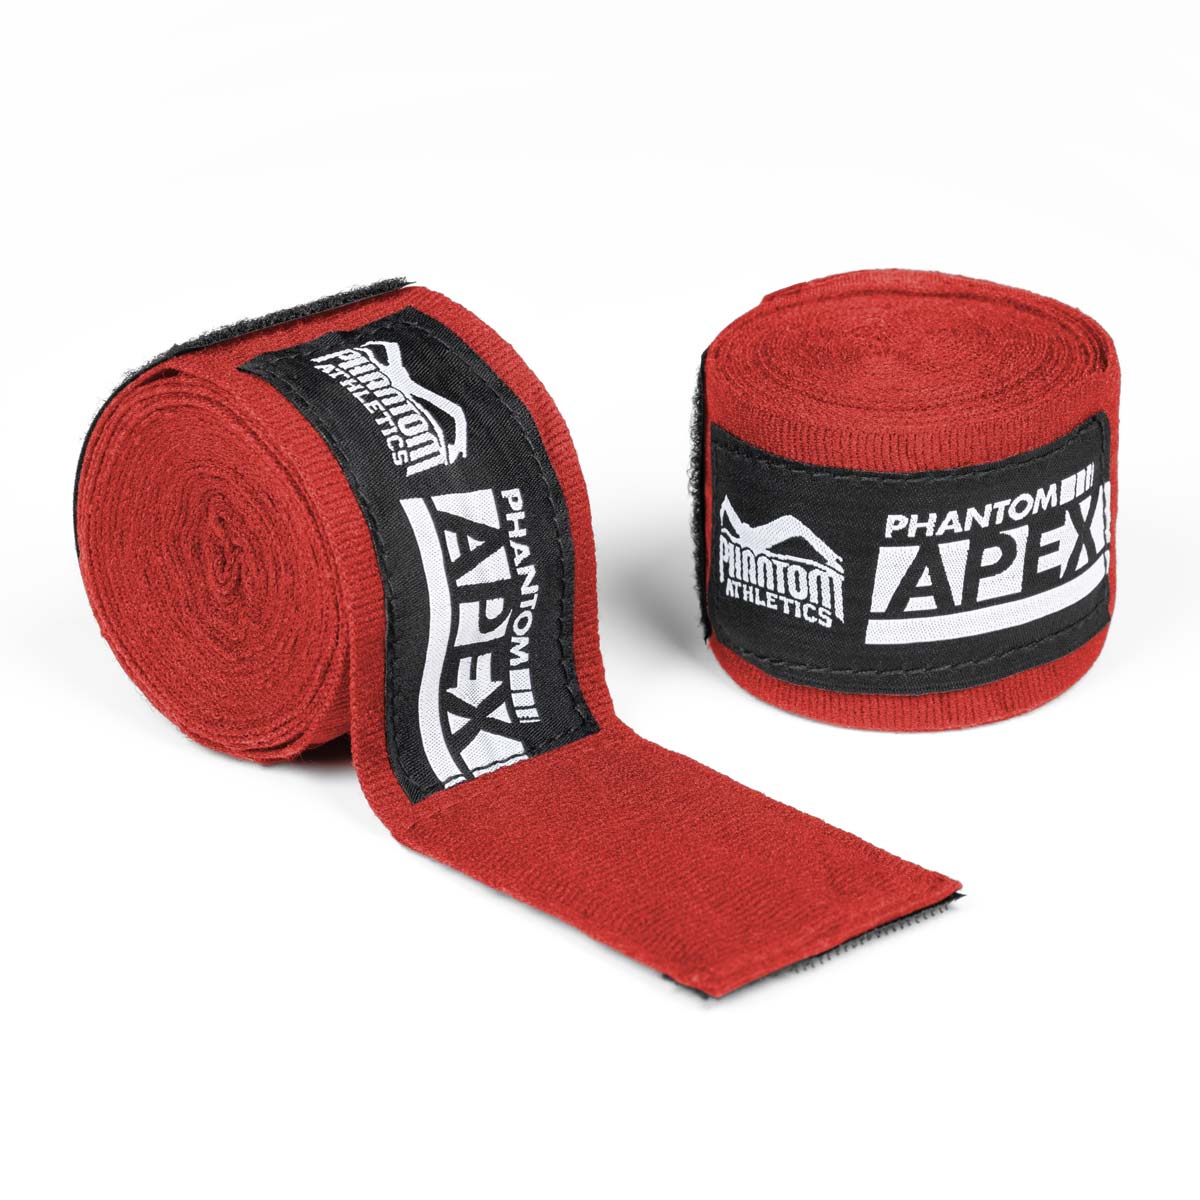 Phantom Boxbandagen für Kampfsport Training und Wettkampf. In der Farbe rot und in 2 verschiedenen Längen. Halbelastisch für maximalen Halt und Tragekomfort.